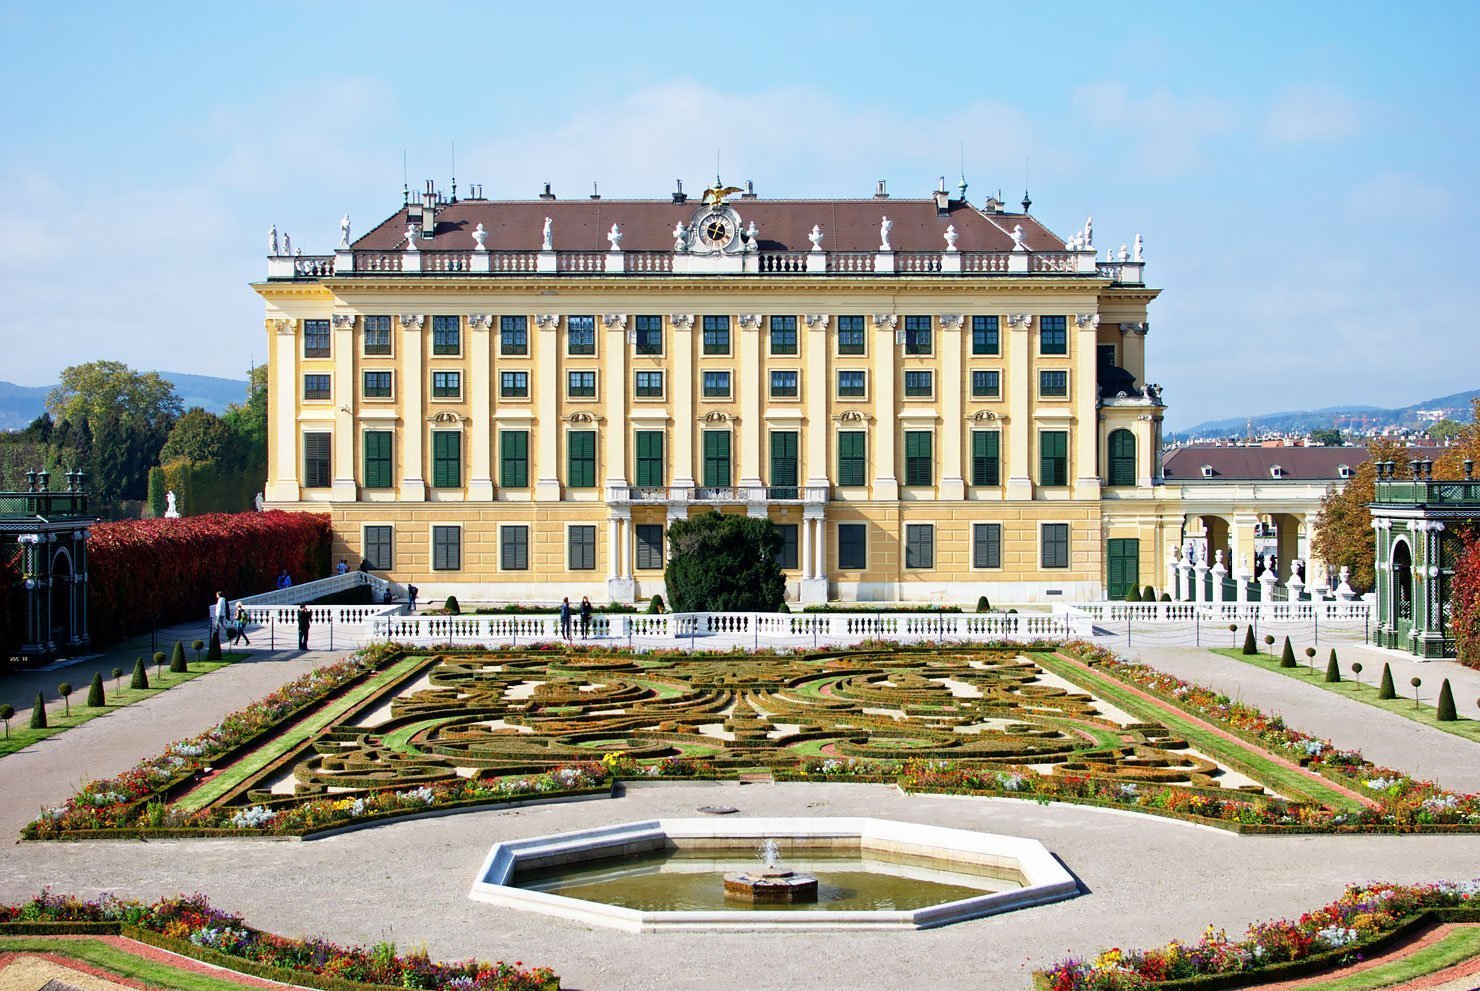 Schönbrunn Palace in Vienna with its beautiful gardens